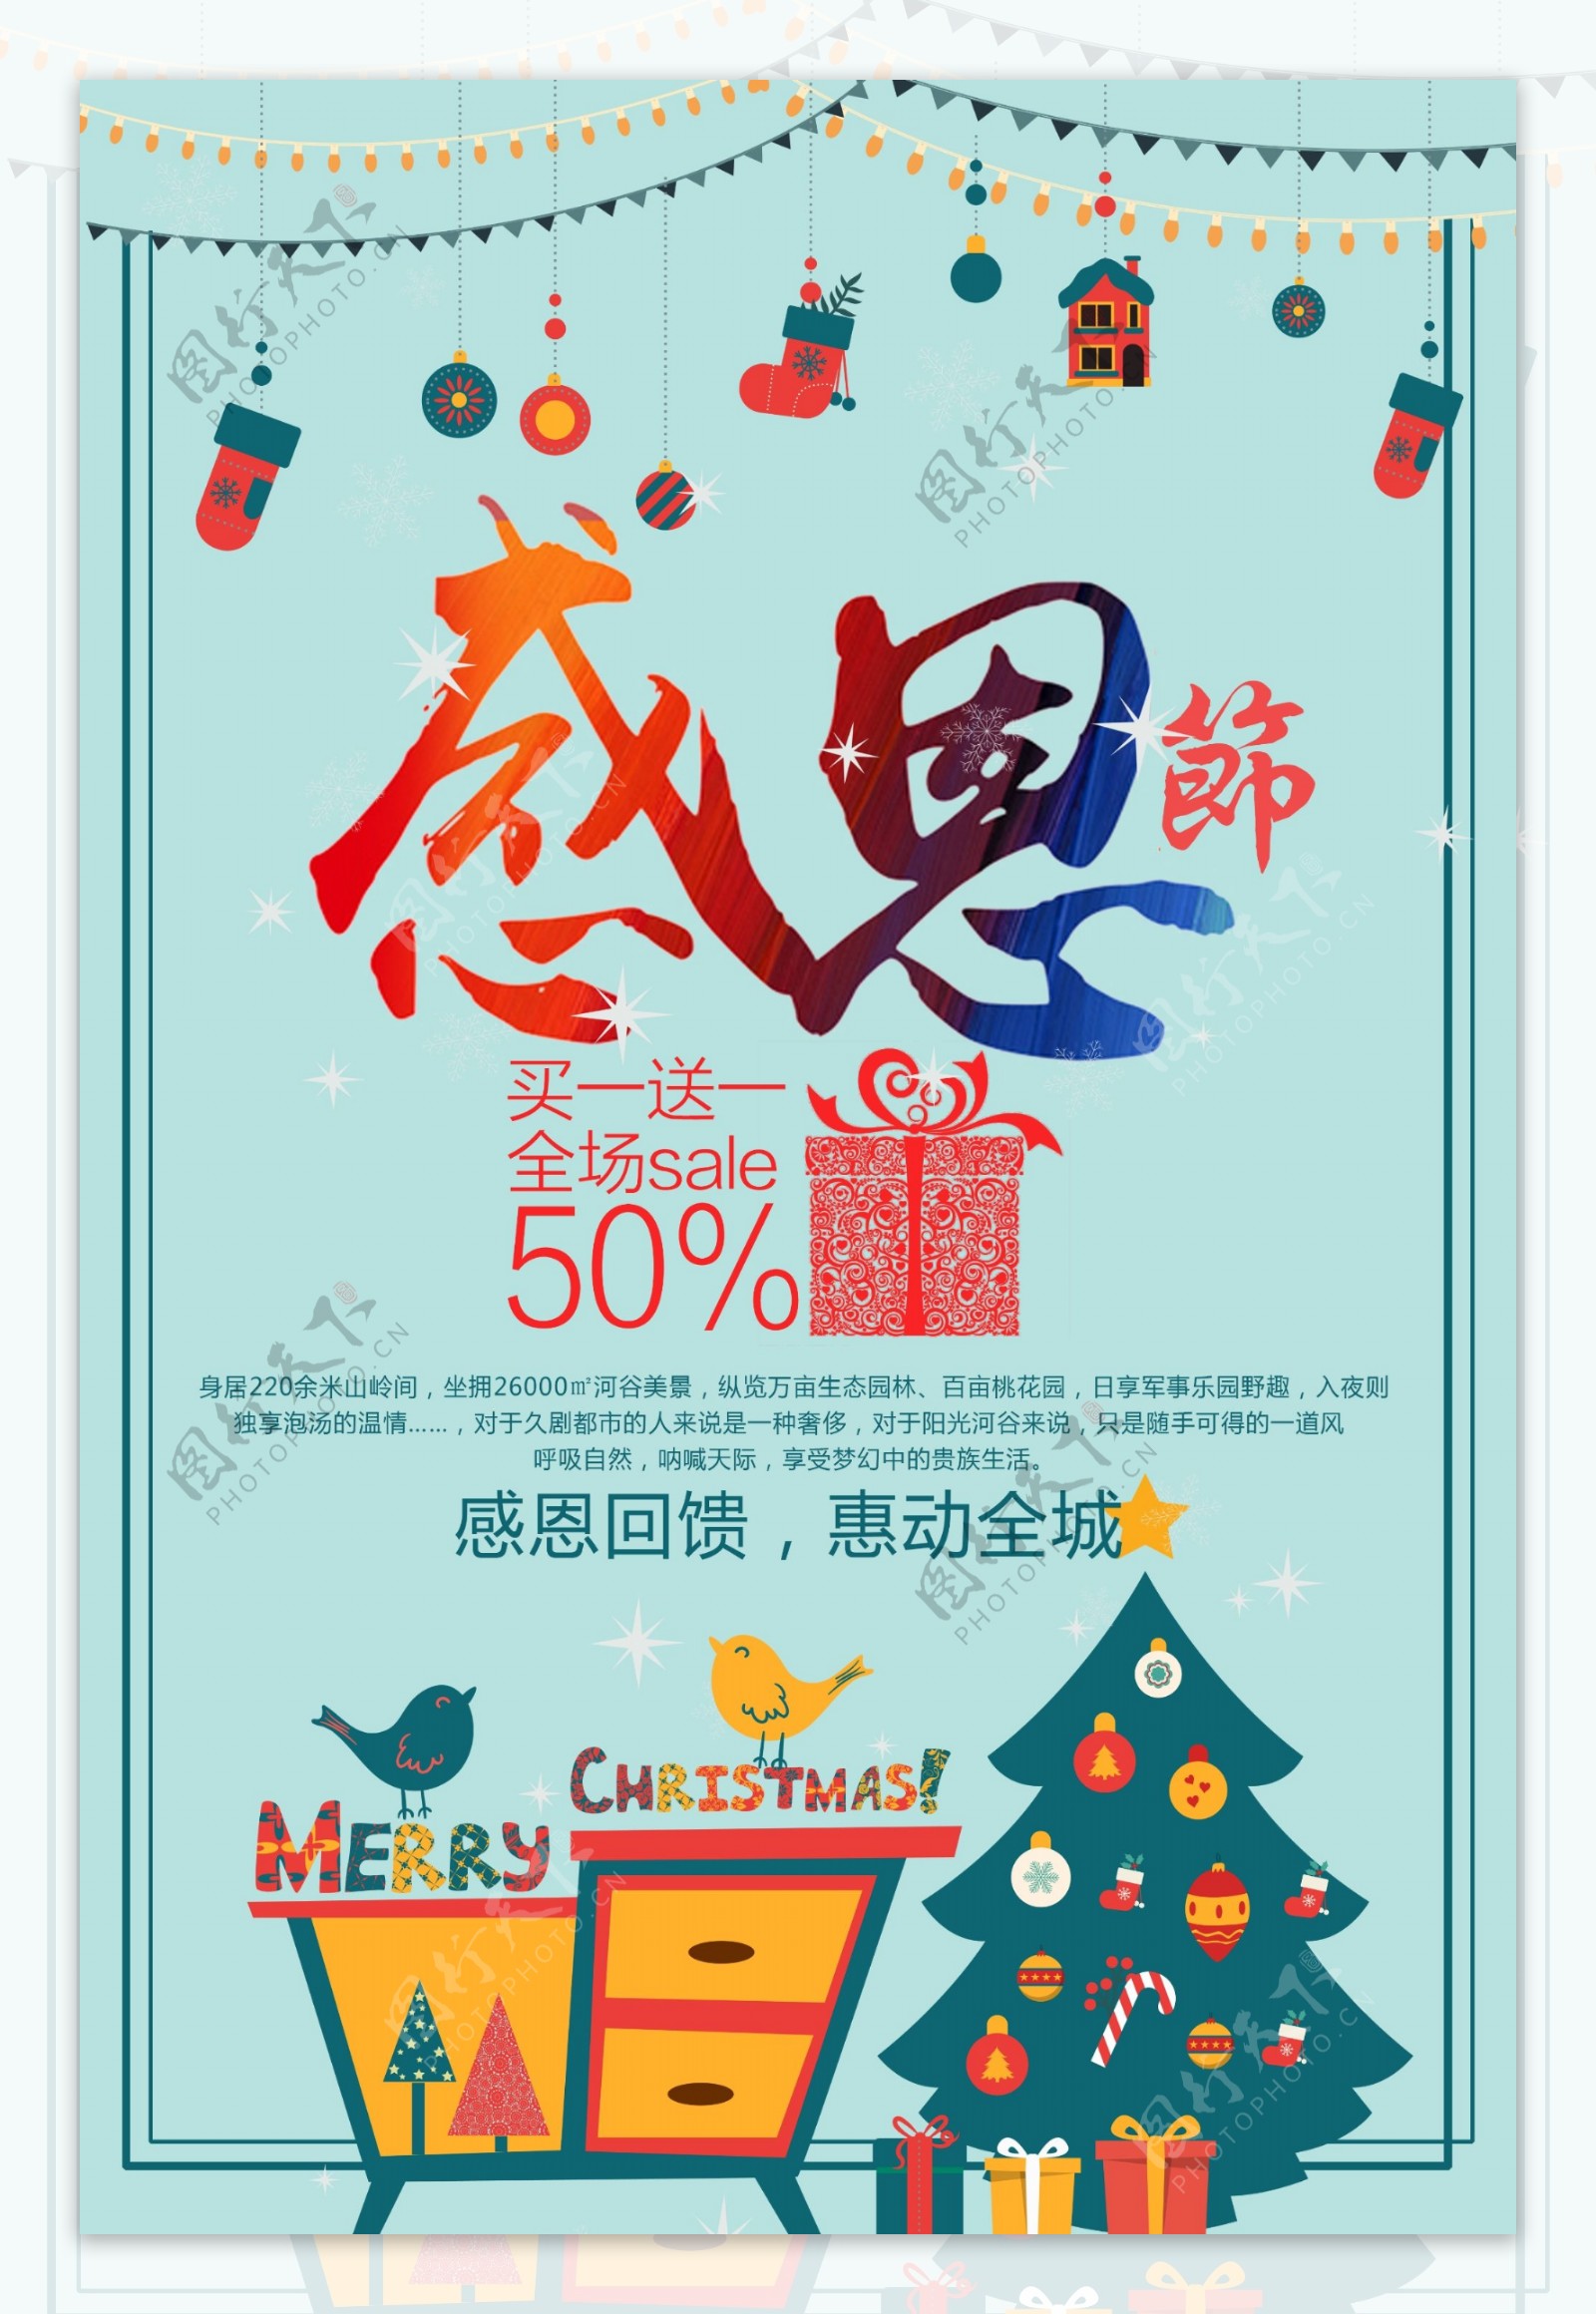 清新简约感恩节促销海报设计